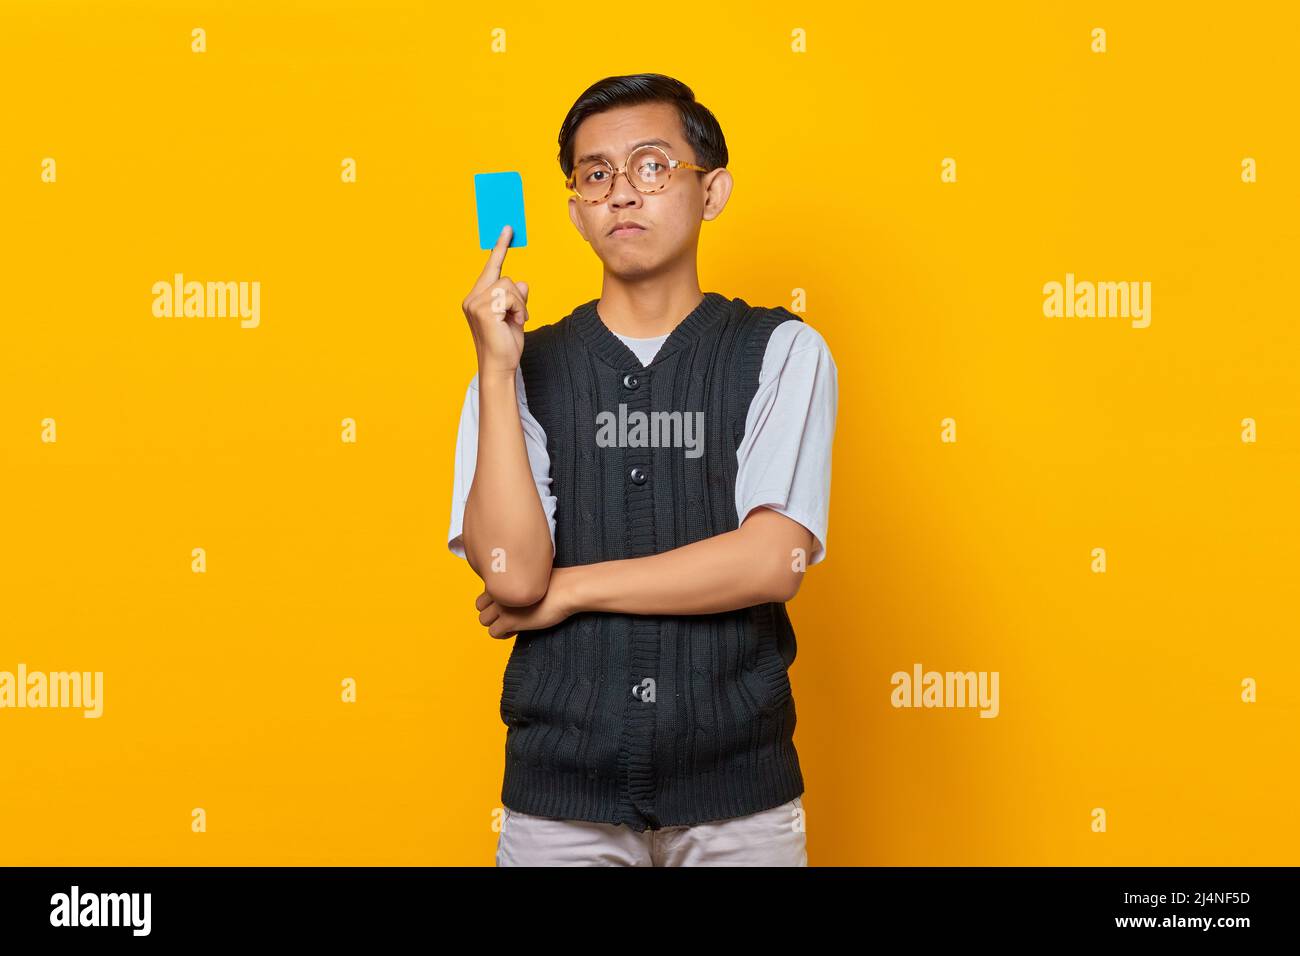 Portrait d'un jeune asiatique choqué montrant une carte de crédit sur fond jaune Banque D'Images